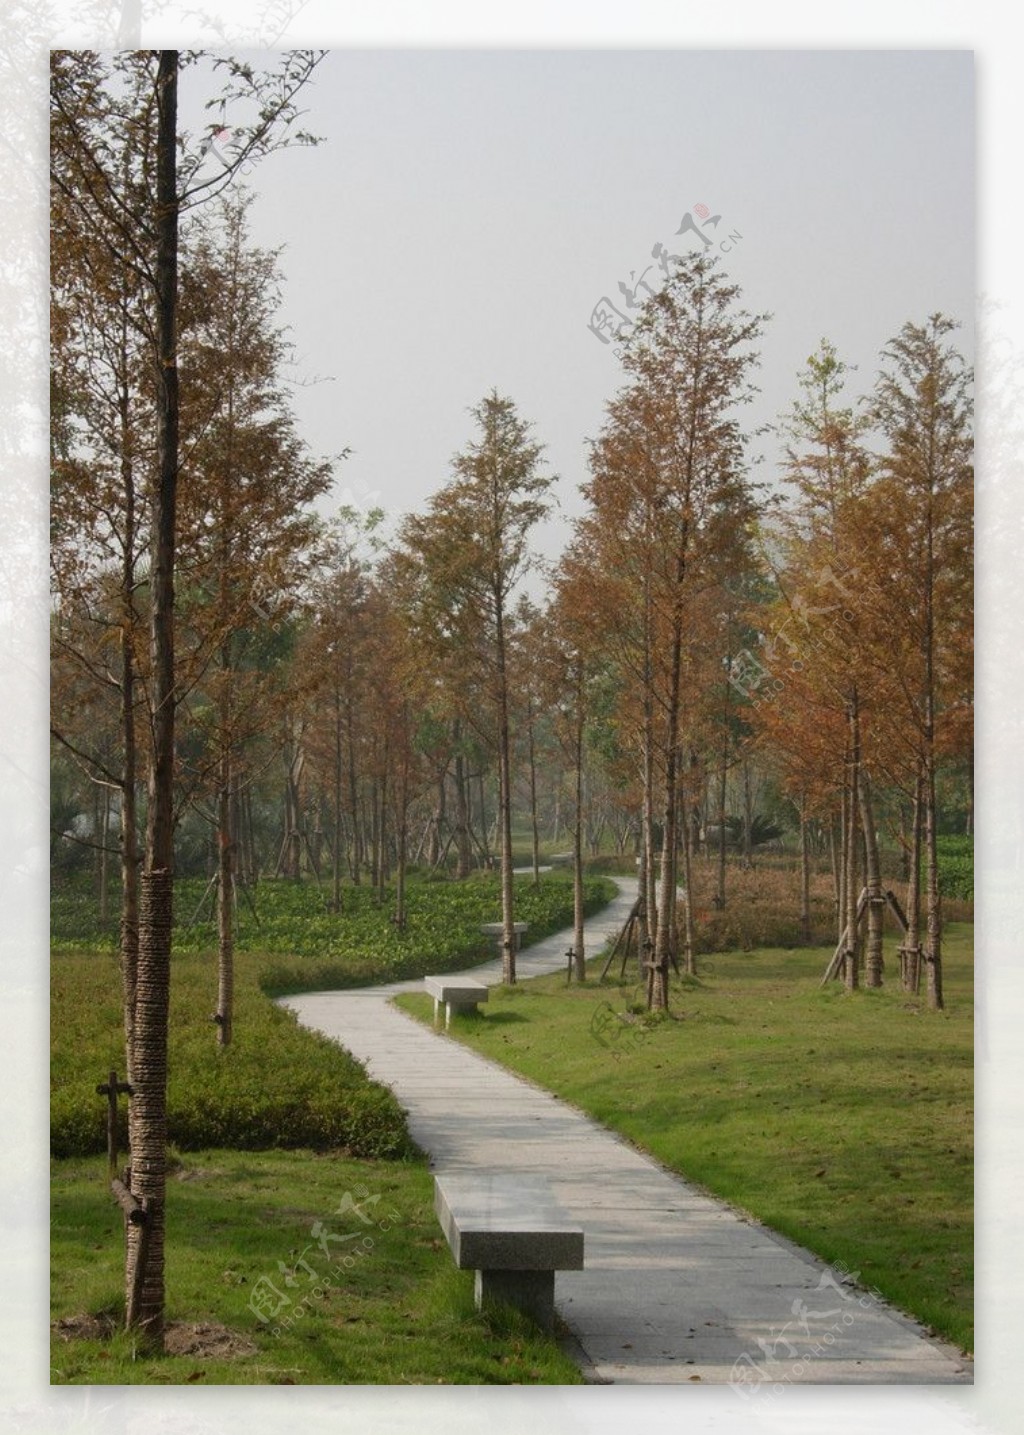 2009道路绿化银奖之江路侧道景观照片图片